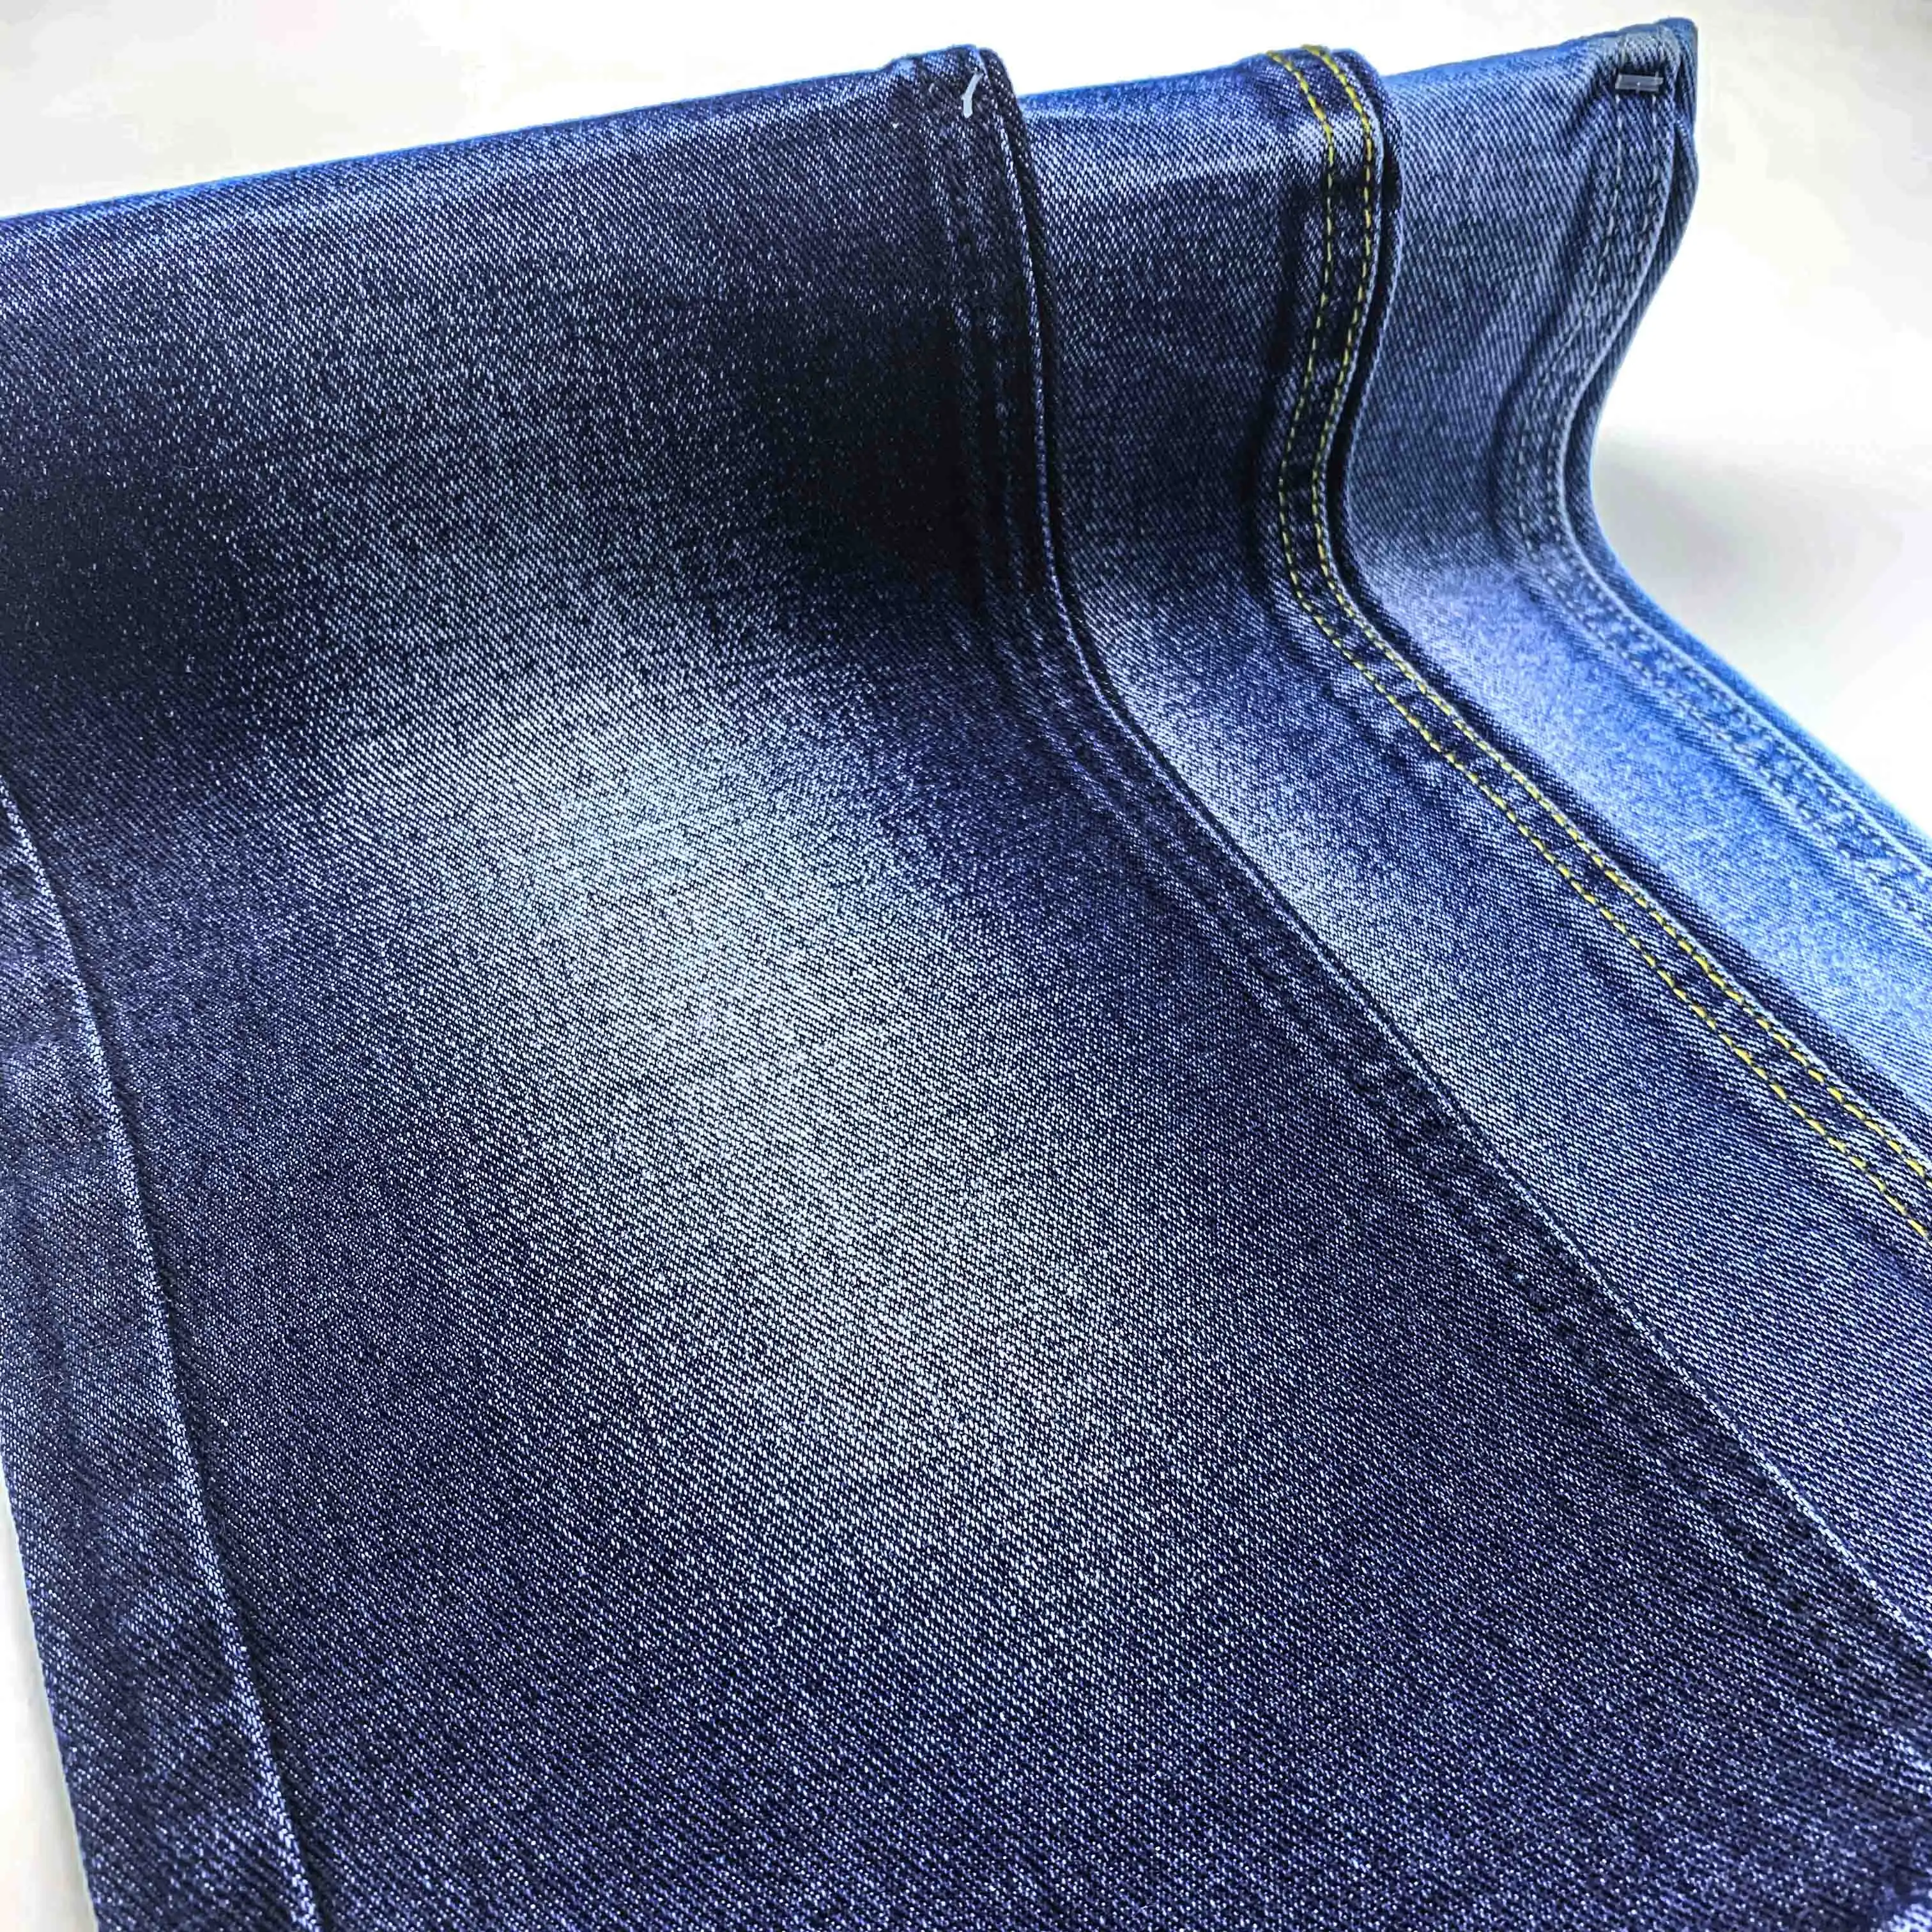 100% Katoen 11.5 Oz Hoge Gewicht Indigo Blue Denim Jeans Stof Voor Jeans